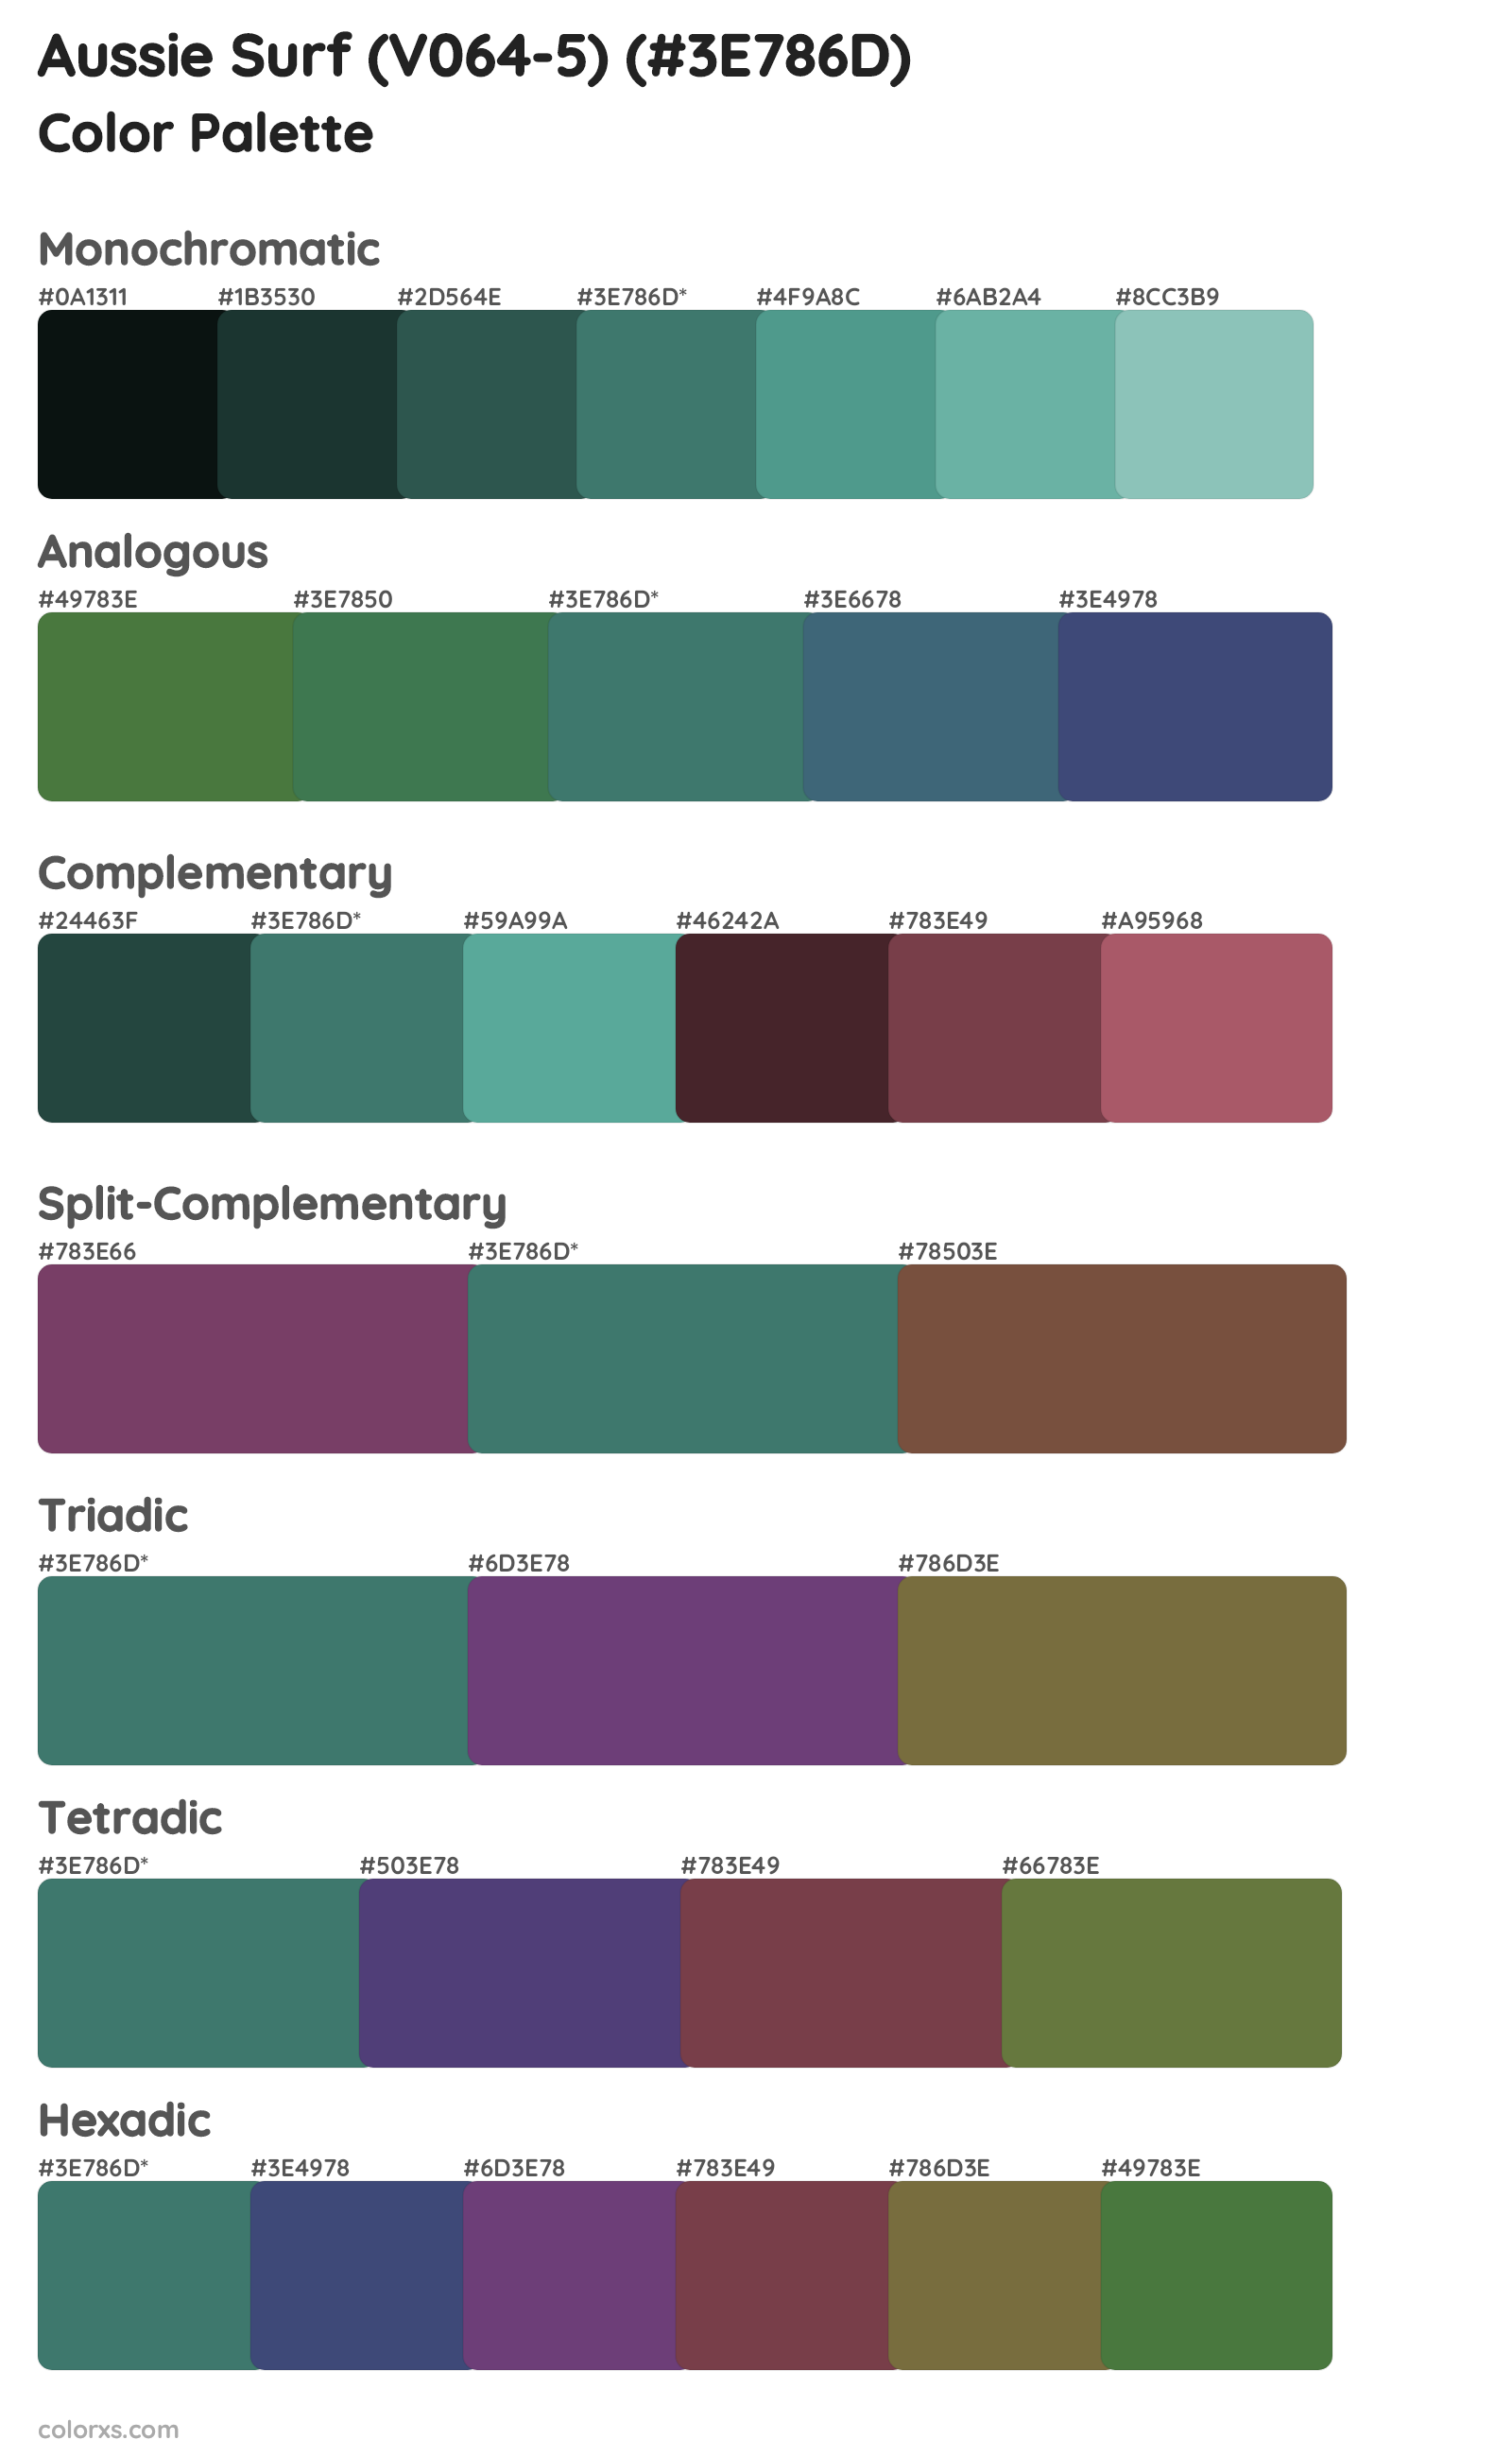 Aussie Surf (V064-5) Color Scheme Palettes